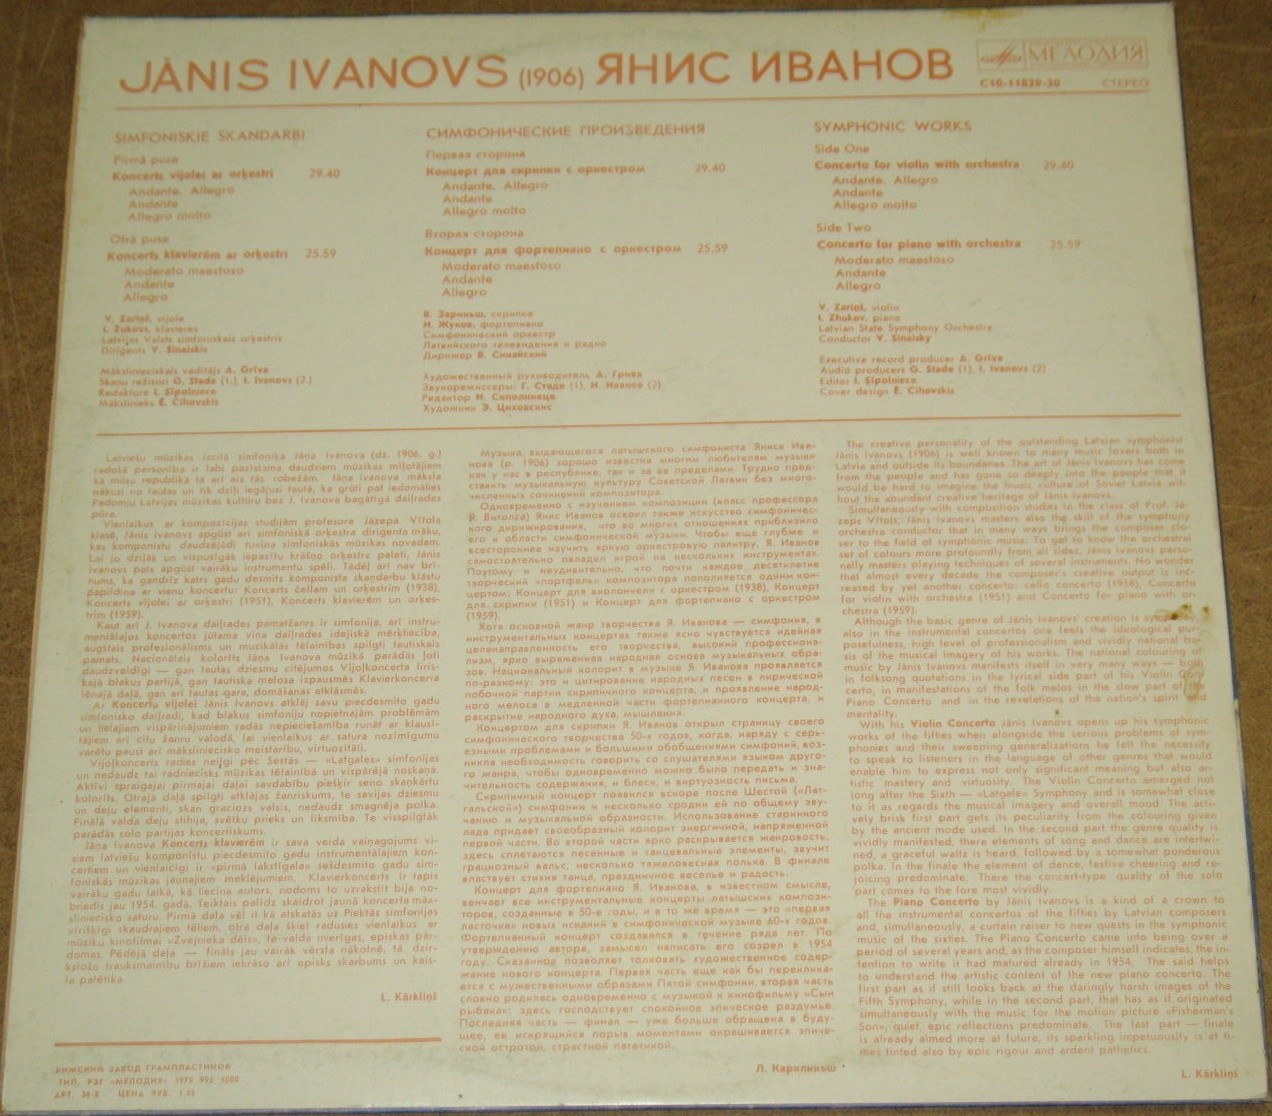 Я. ИВАНОВ (1906): Симфонические произведения